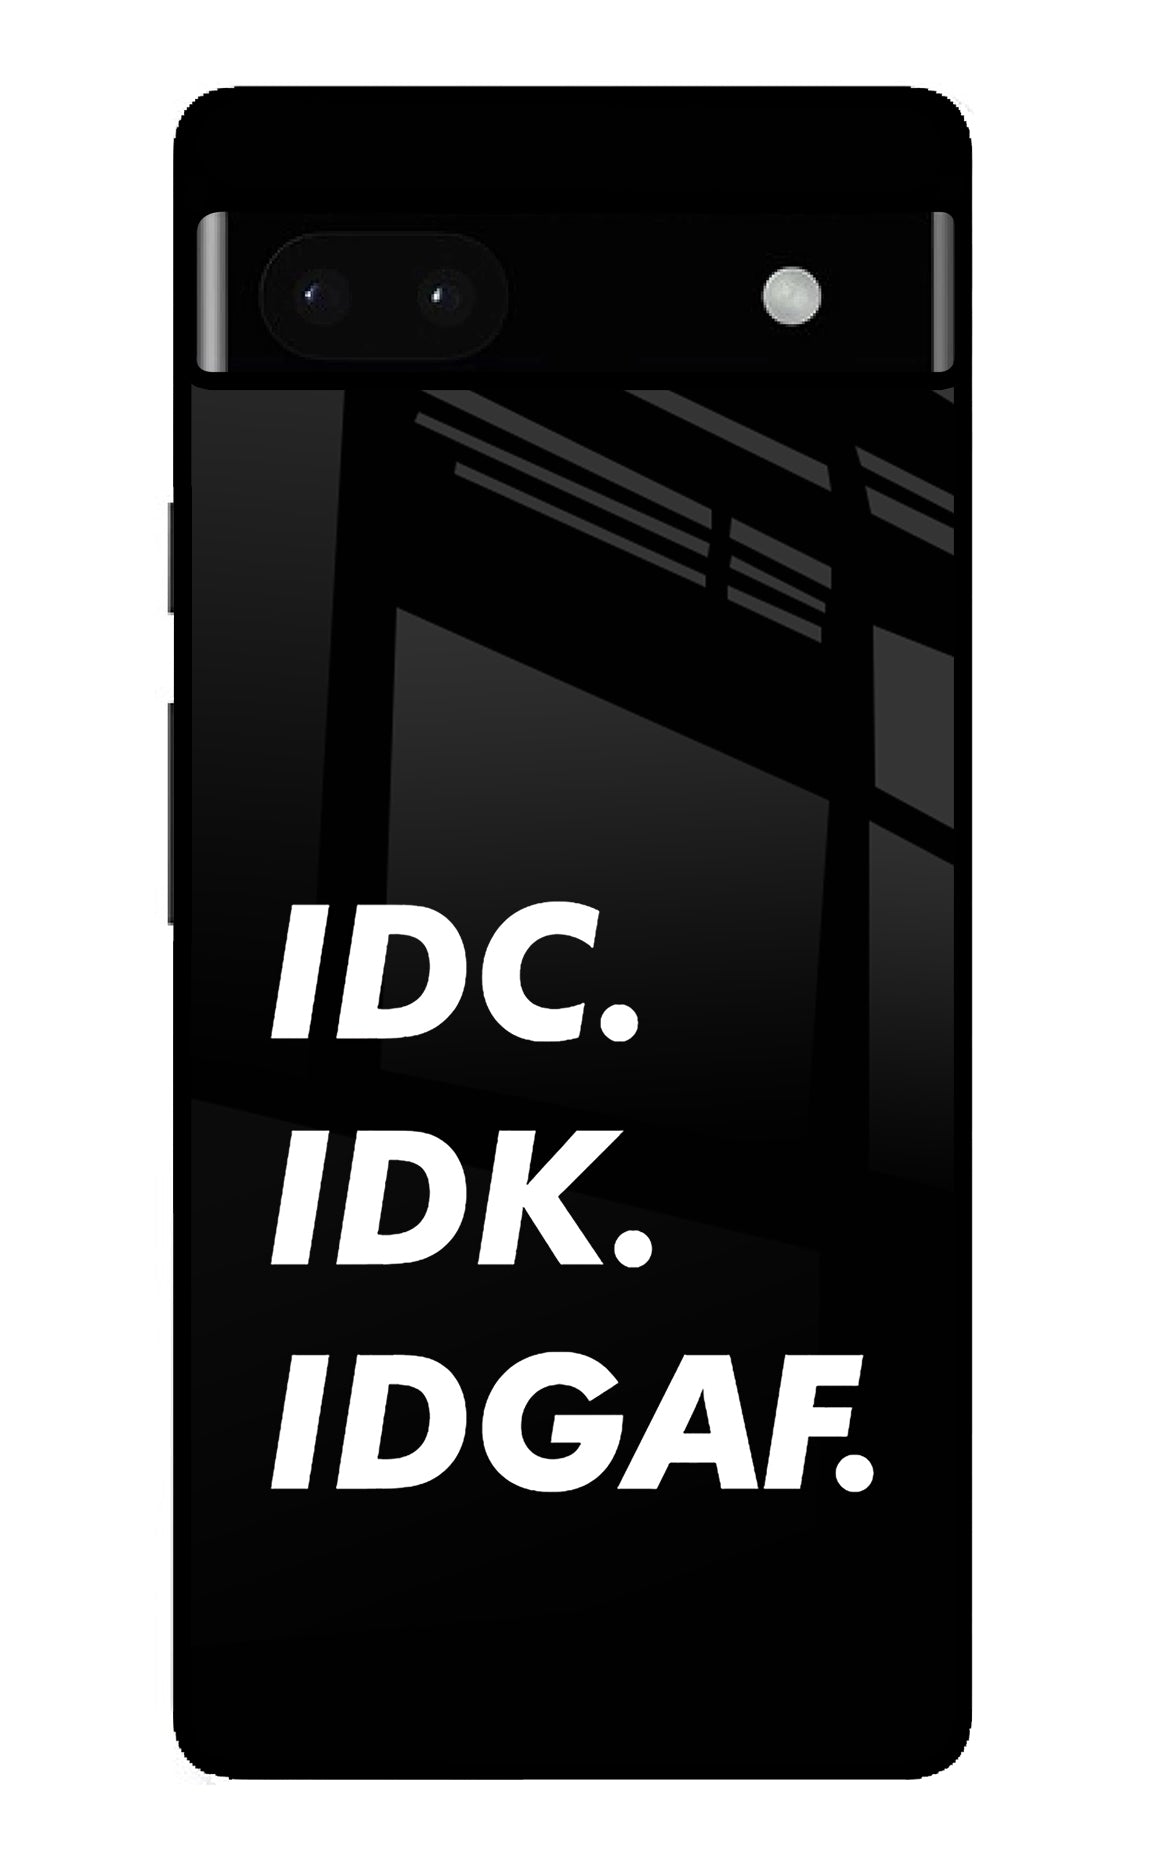 Idc Idk Idgaf Google Pixel 6A Back Cover